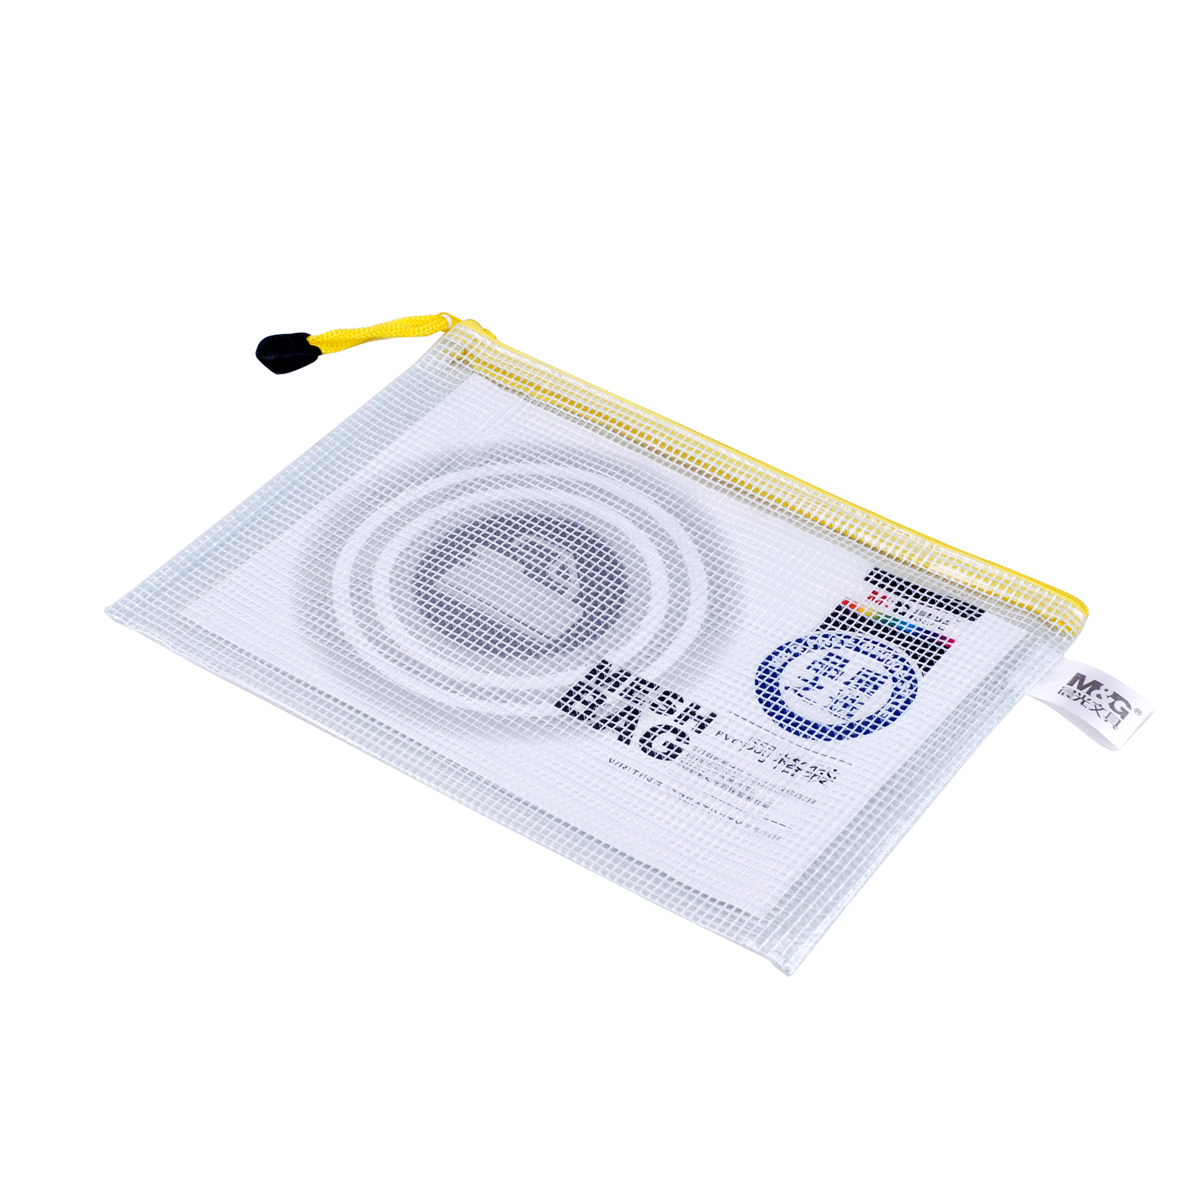 晨光A5网格袋ADM94508 PVC网格拉链袋 拉链文件袋 票据袋子 12个